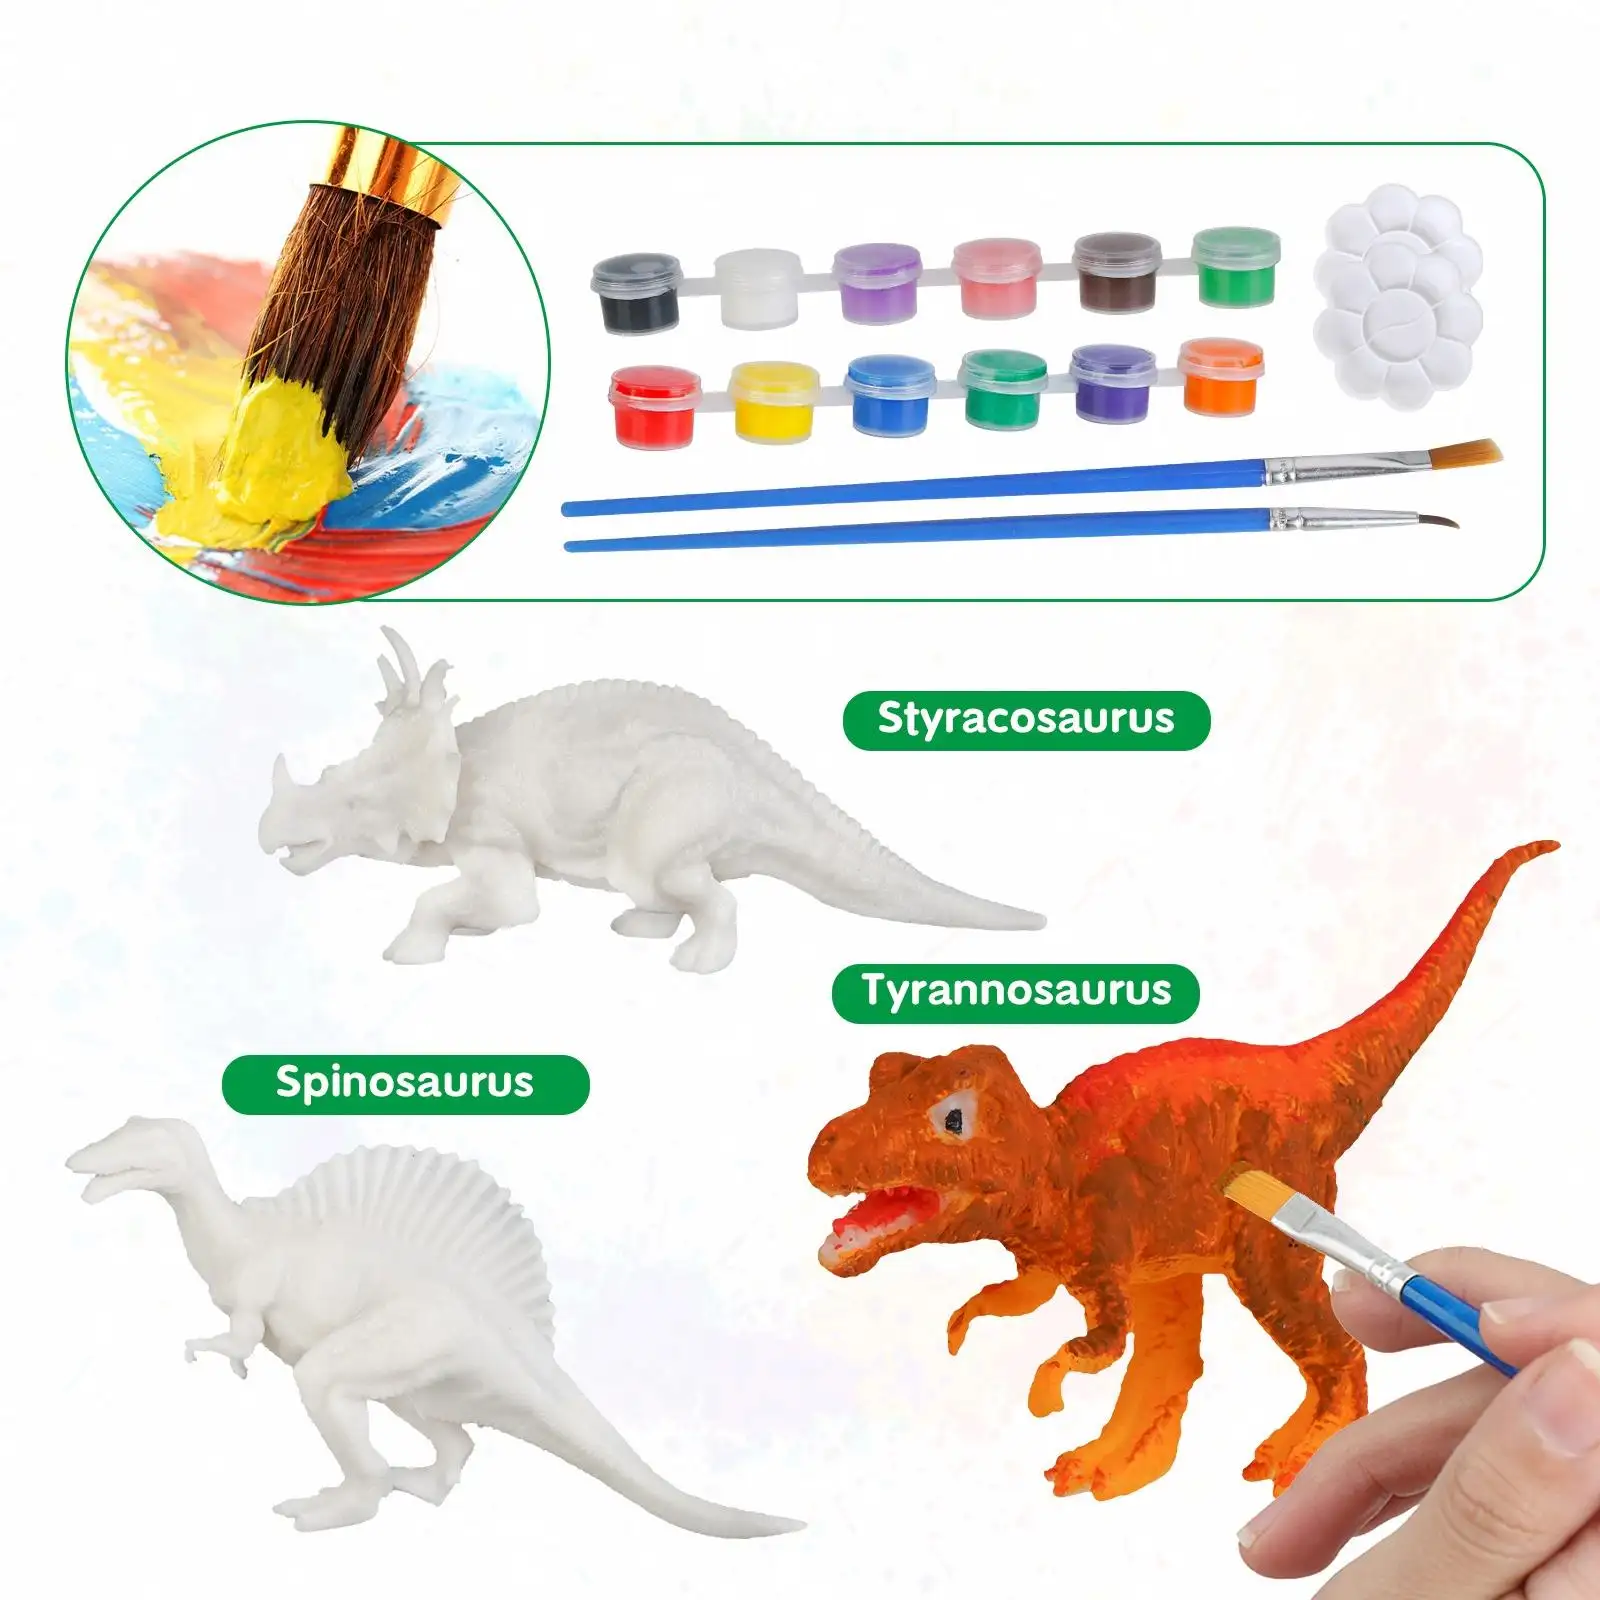 ชุดไดโนเสาร์ DIY 3D ธีมงานเลี้ยง,ชุดภาพวาดไดโนเสาร์สำหรับเด็กงานฝีมือและศิลปะ10ชิ้น